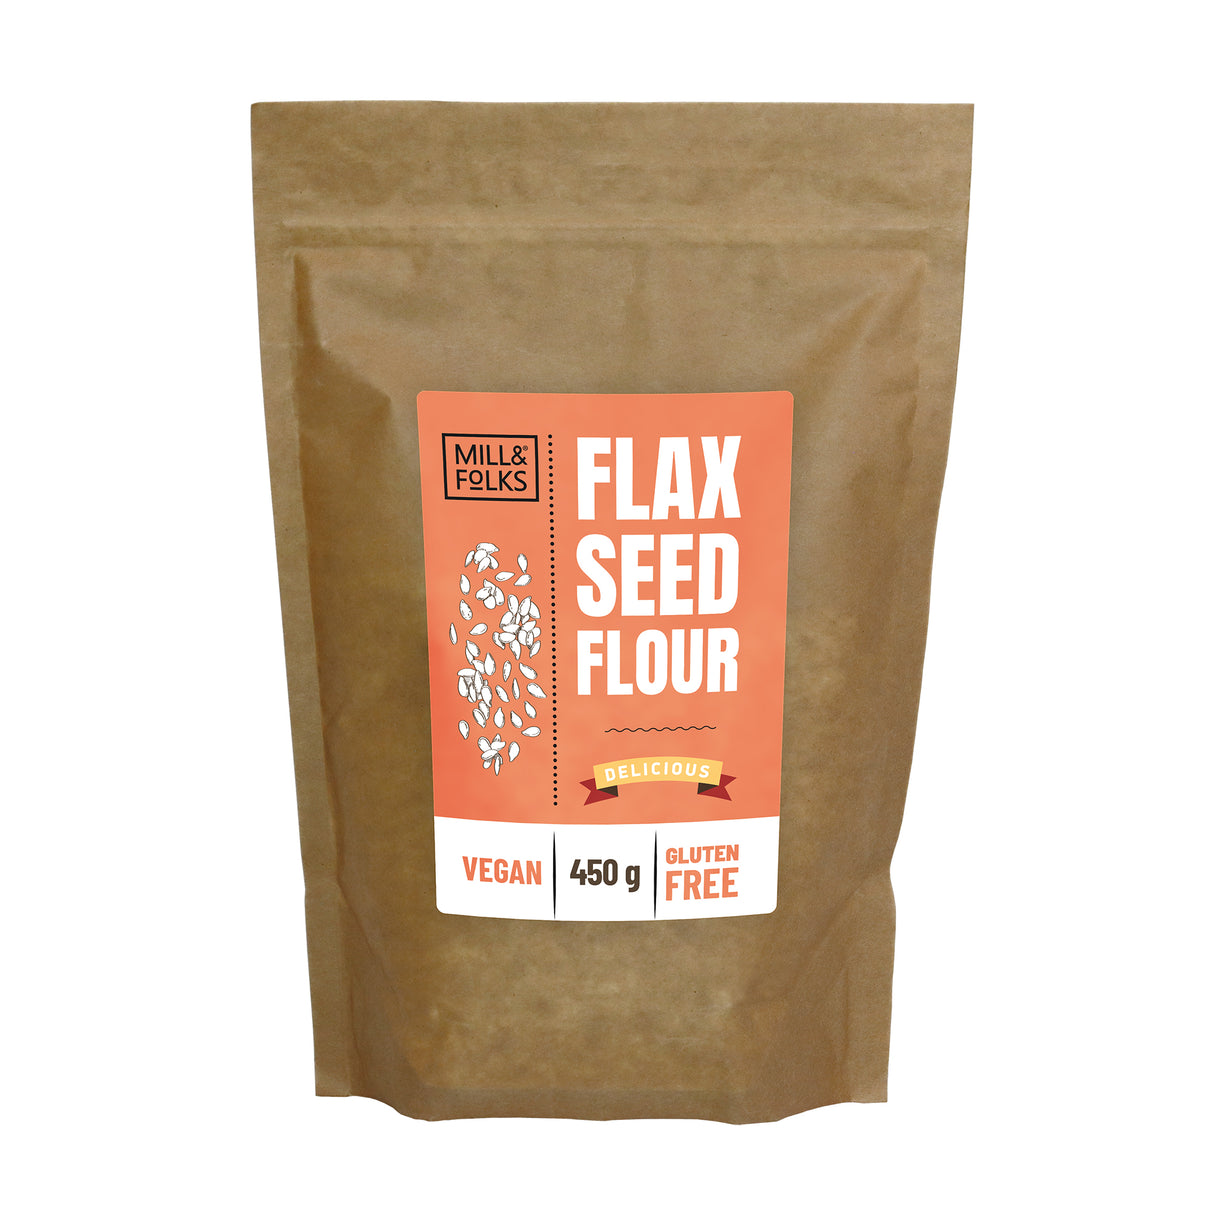 Golden flax seed flour 450g